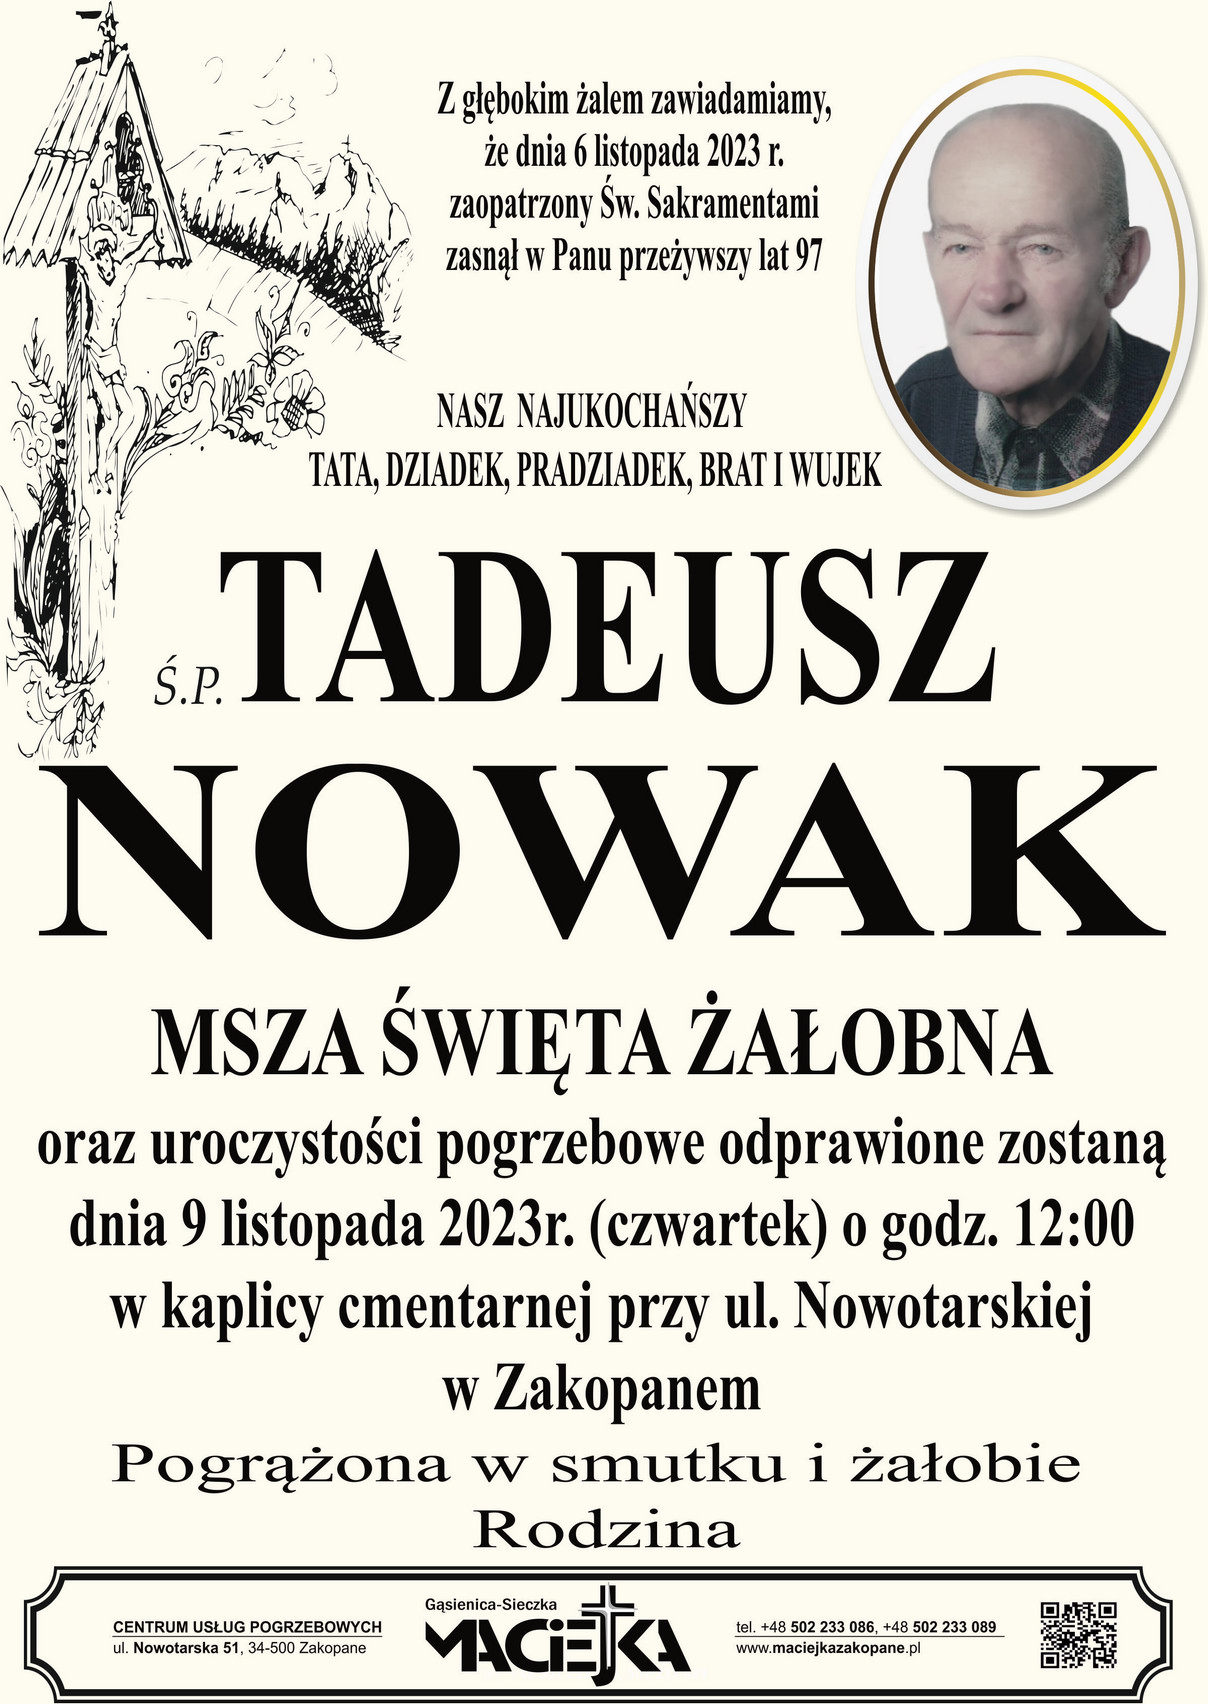 Tadeusz Nowak